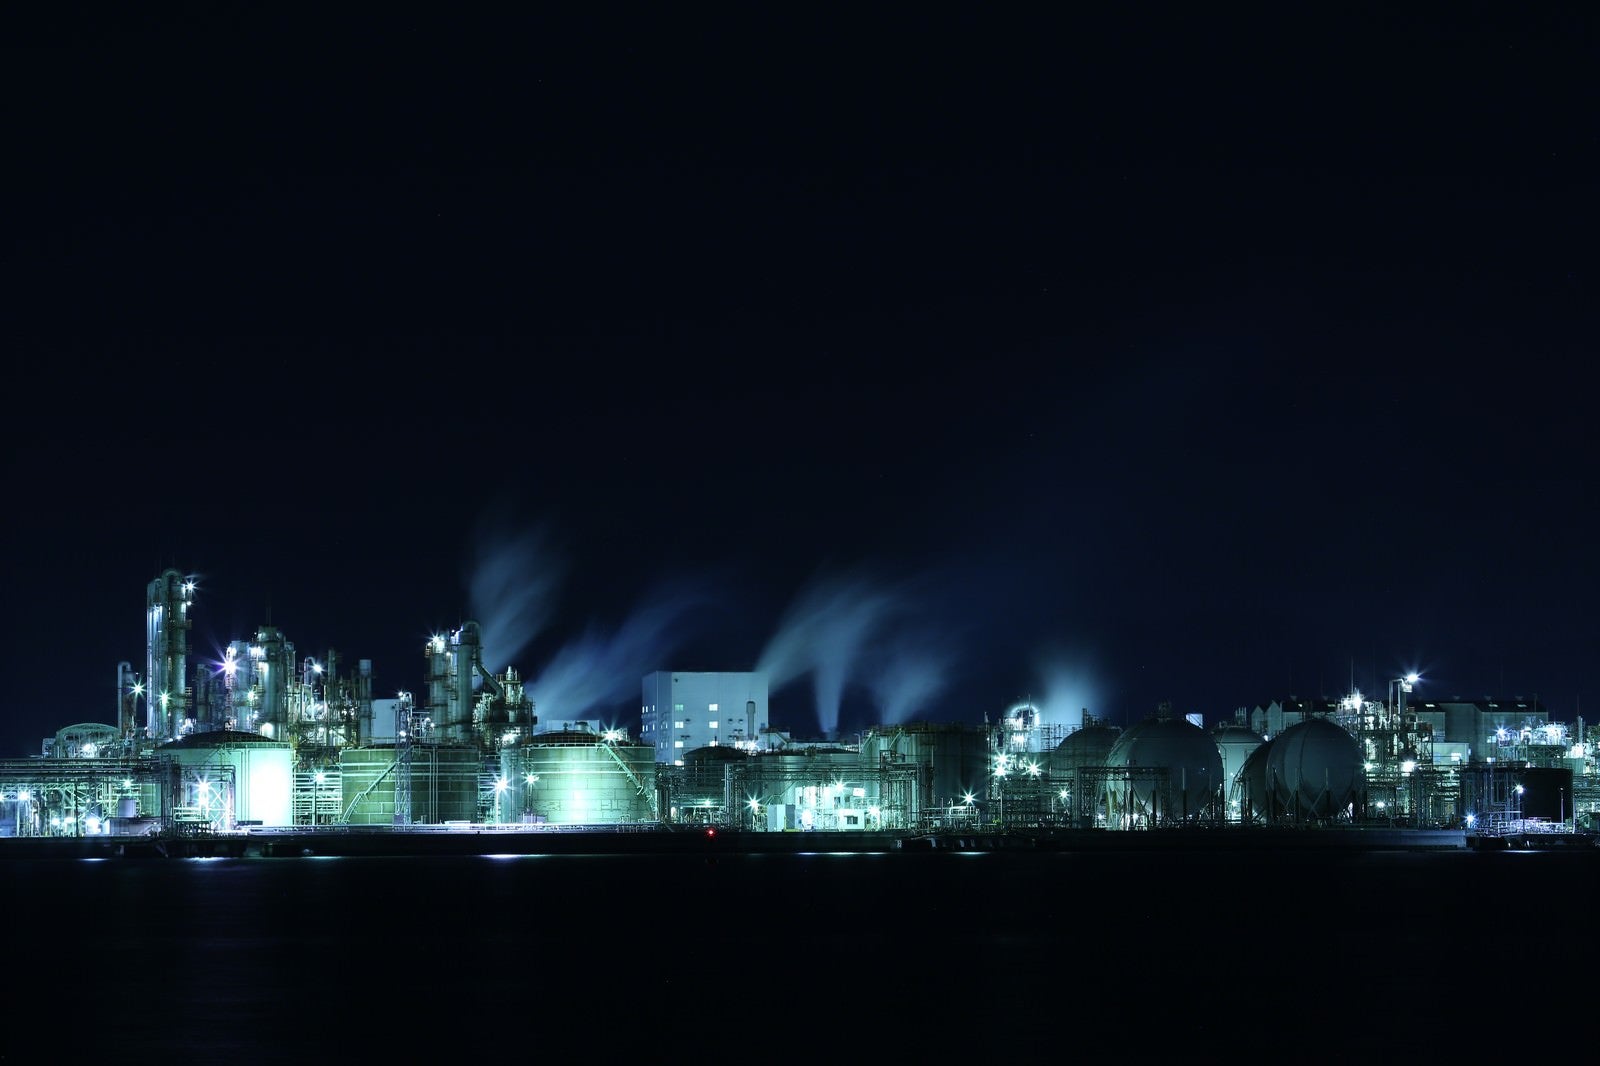 「暗闇に浮かぶ工場夜景の丸タンク」の写真